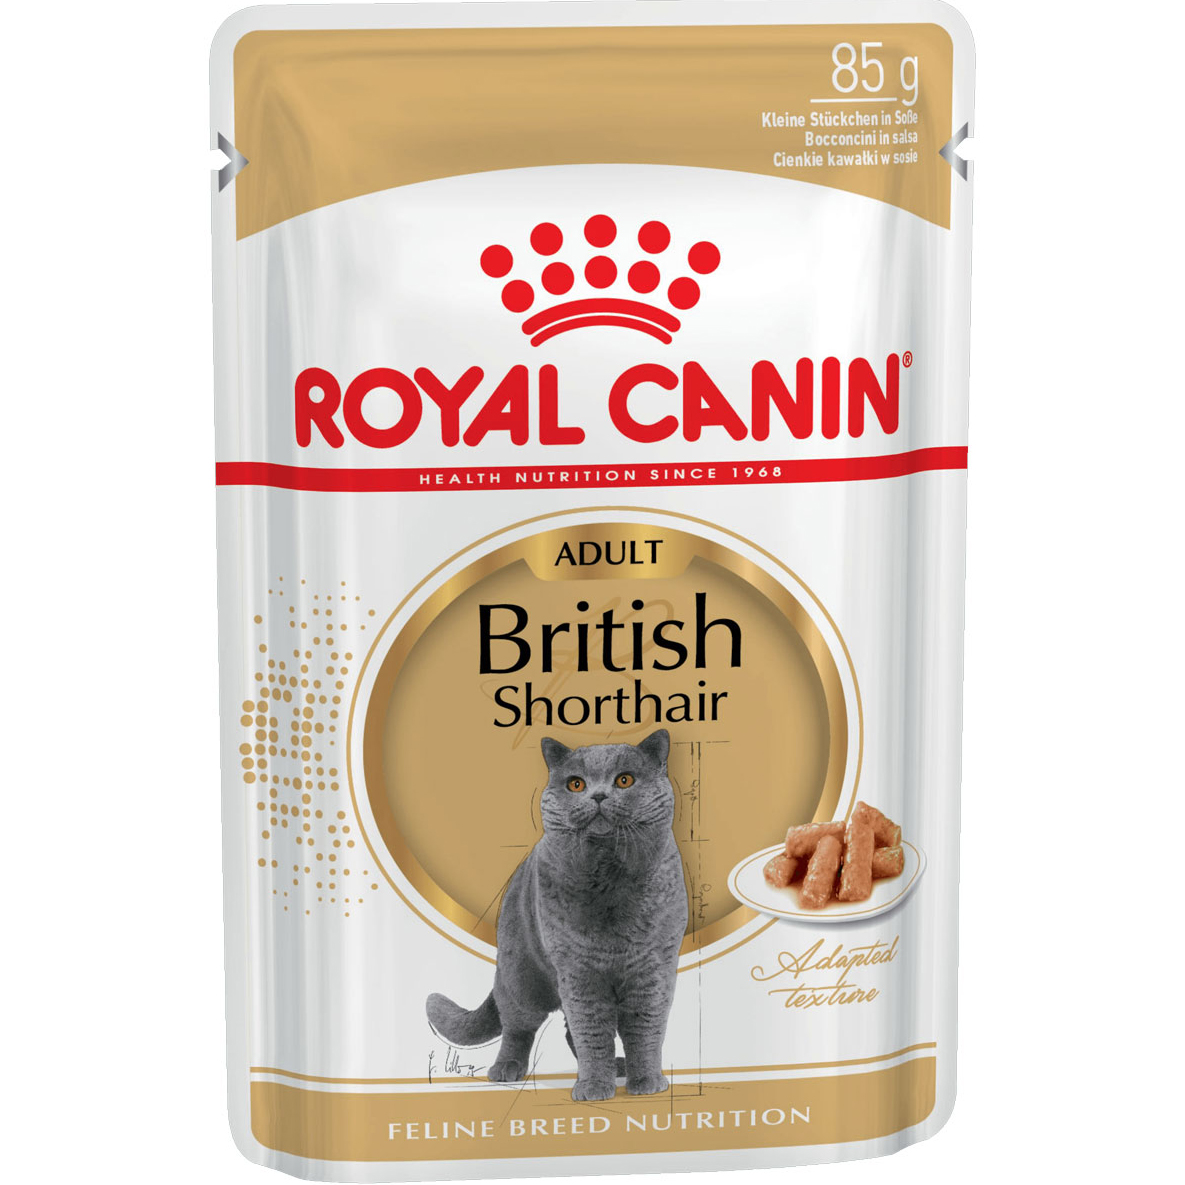 Корм для кошек Royal Canin Для британской короткошерстной 85 г пухова олеся александровна британские короткошерстные кошки